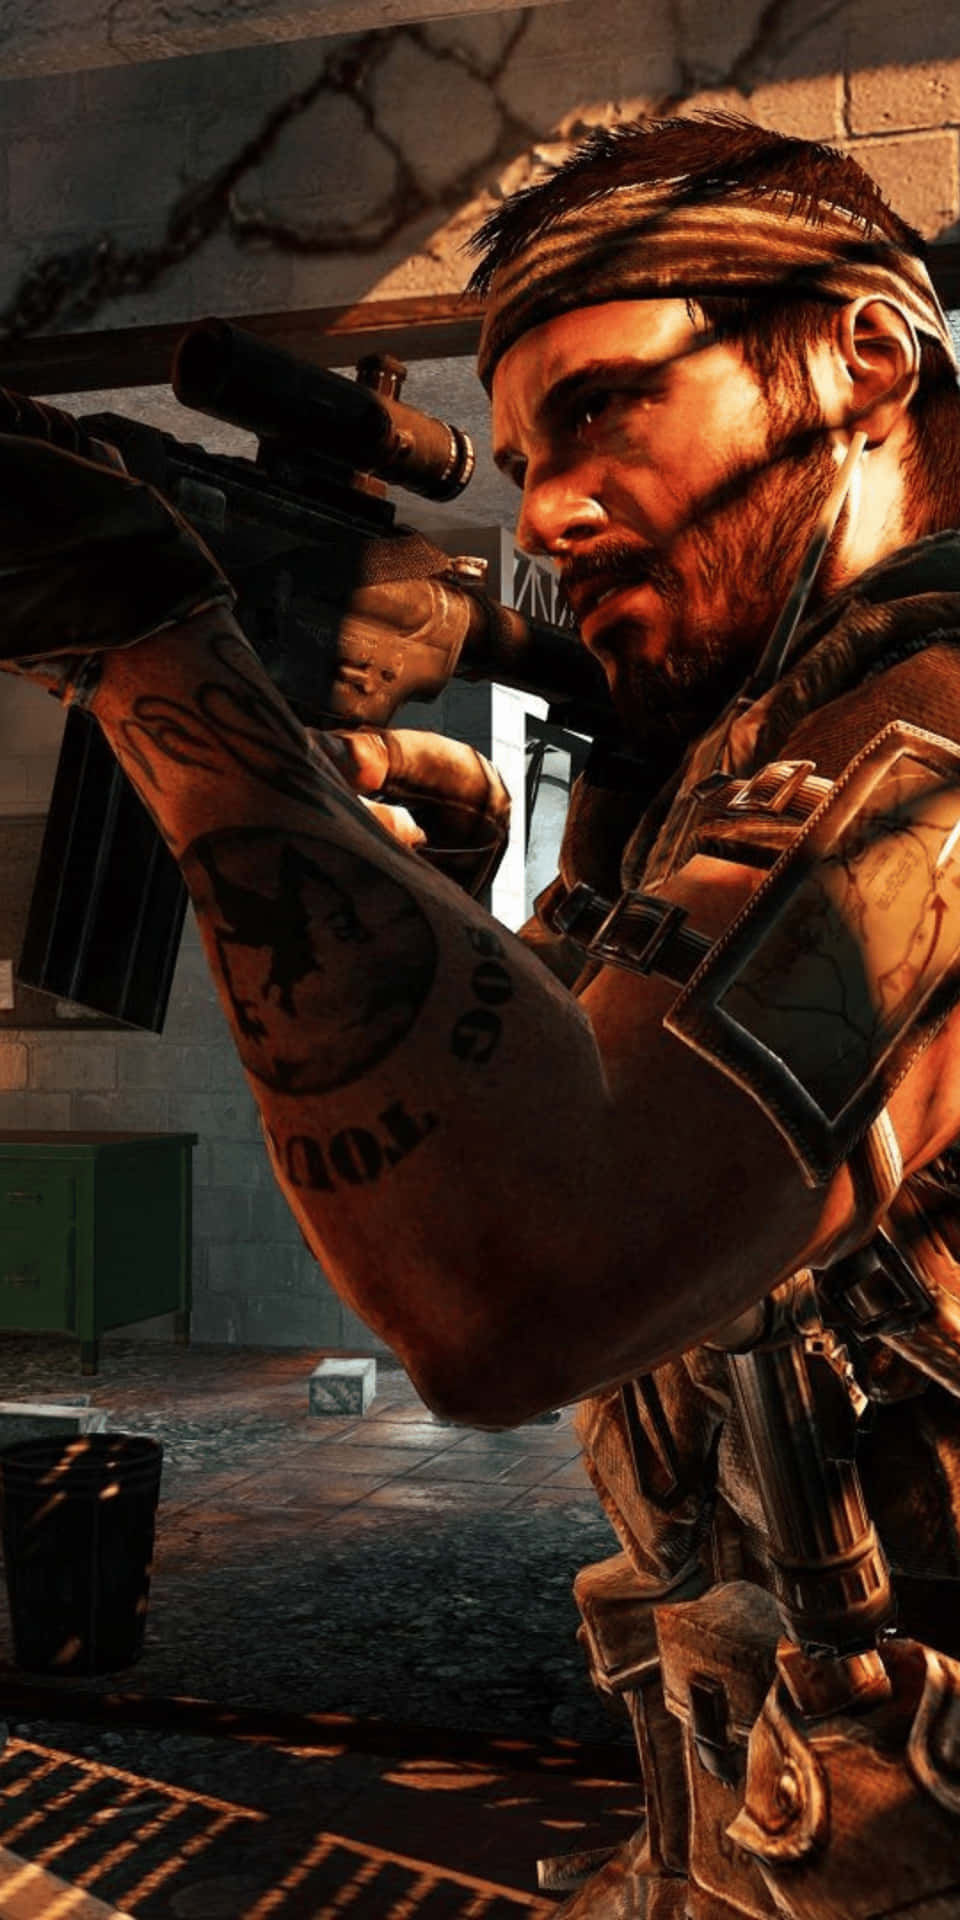 Fondode Pantalla De Pixel 3 De Call Of Duty Black Ops Cold War Con La Imagen De Frank Woods.